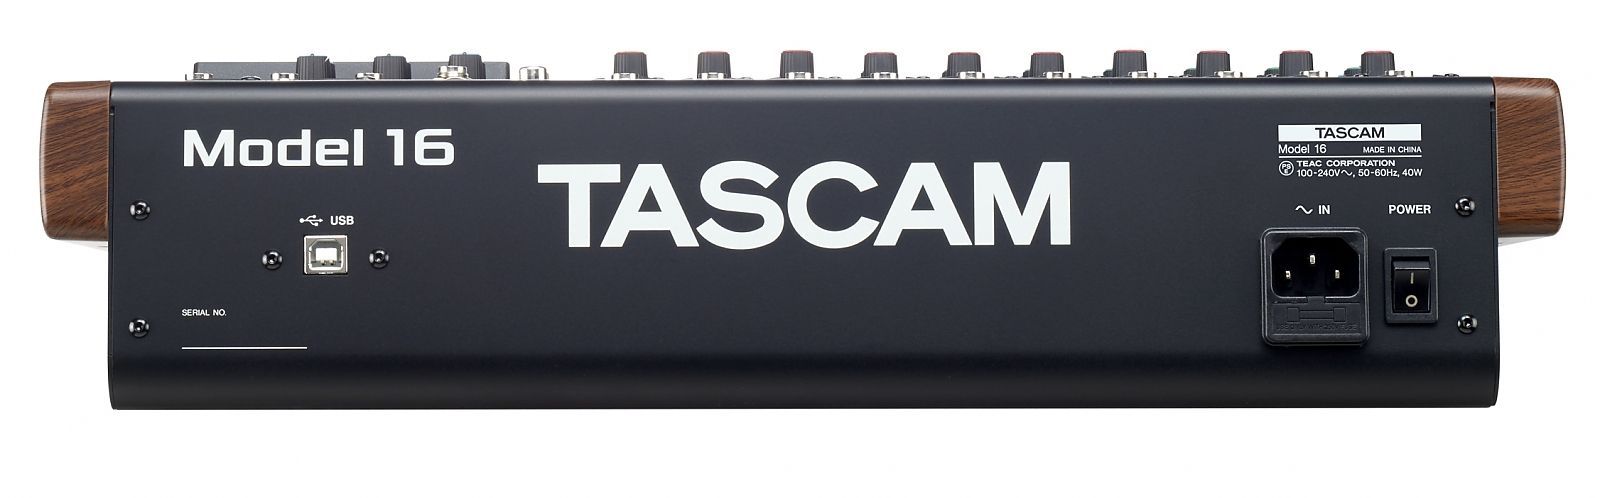 Tascam Model 16 Analogmischpult mit digitalem 16-Spur-Recorder